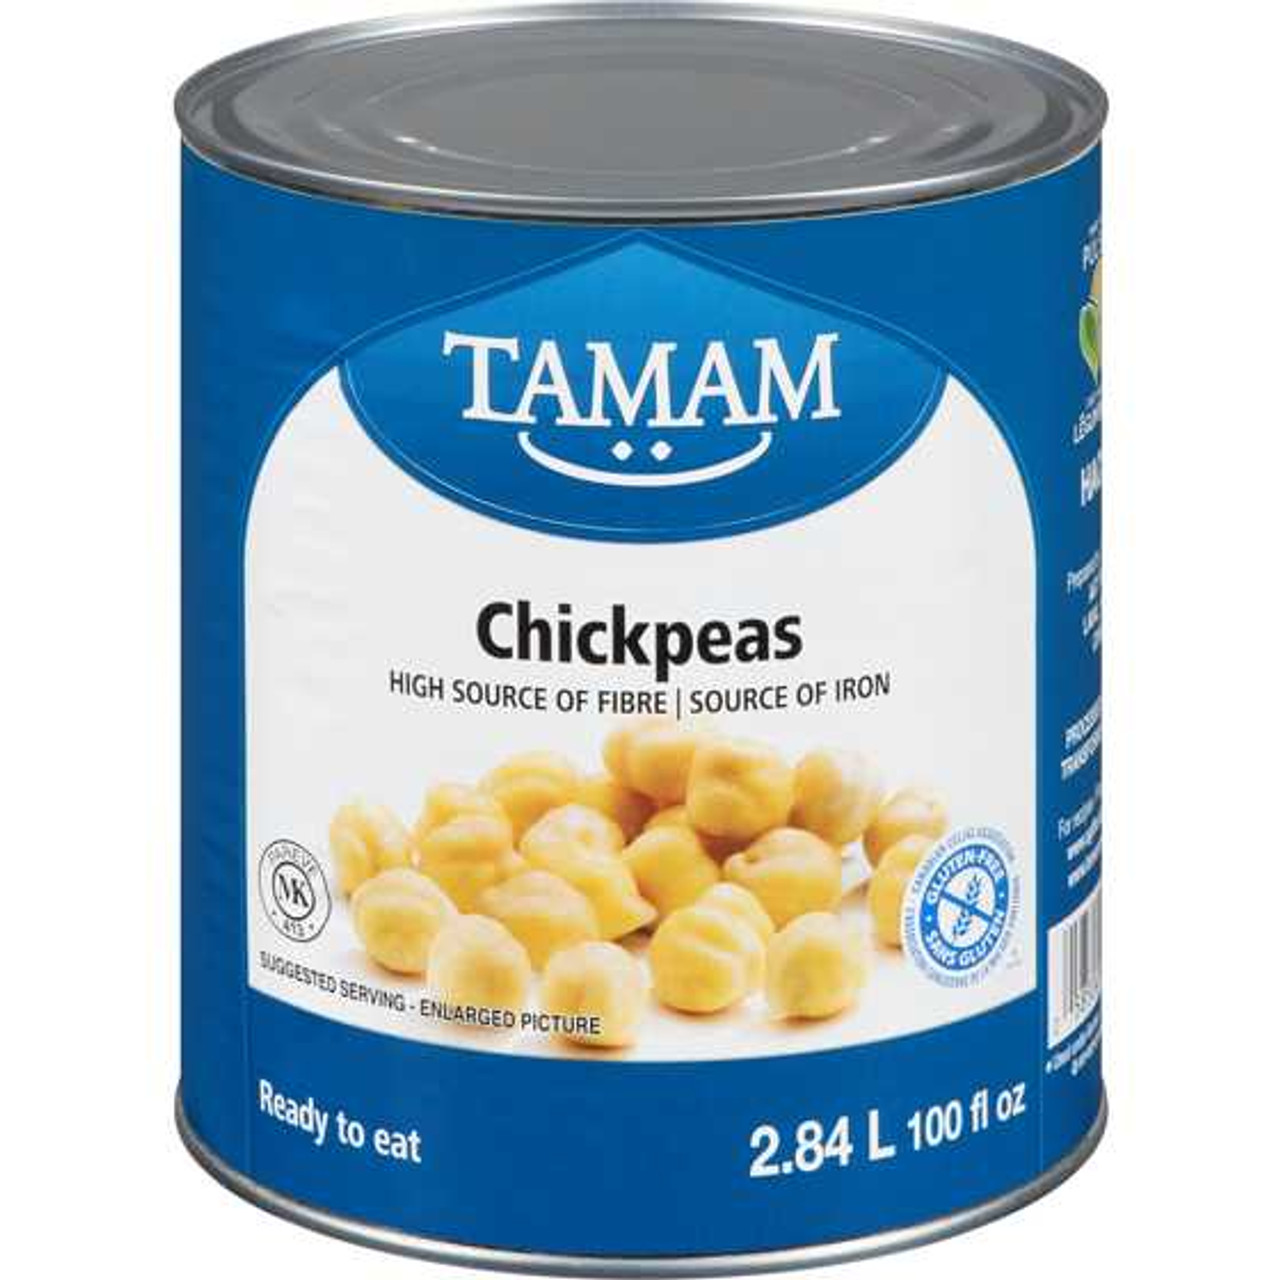 TAMAM Chickpeas 2.84Litre TAMAM Chicken Pieces